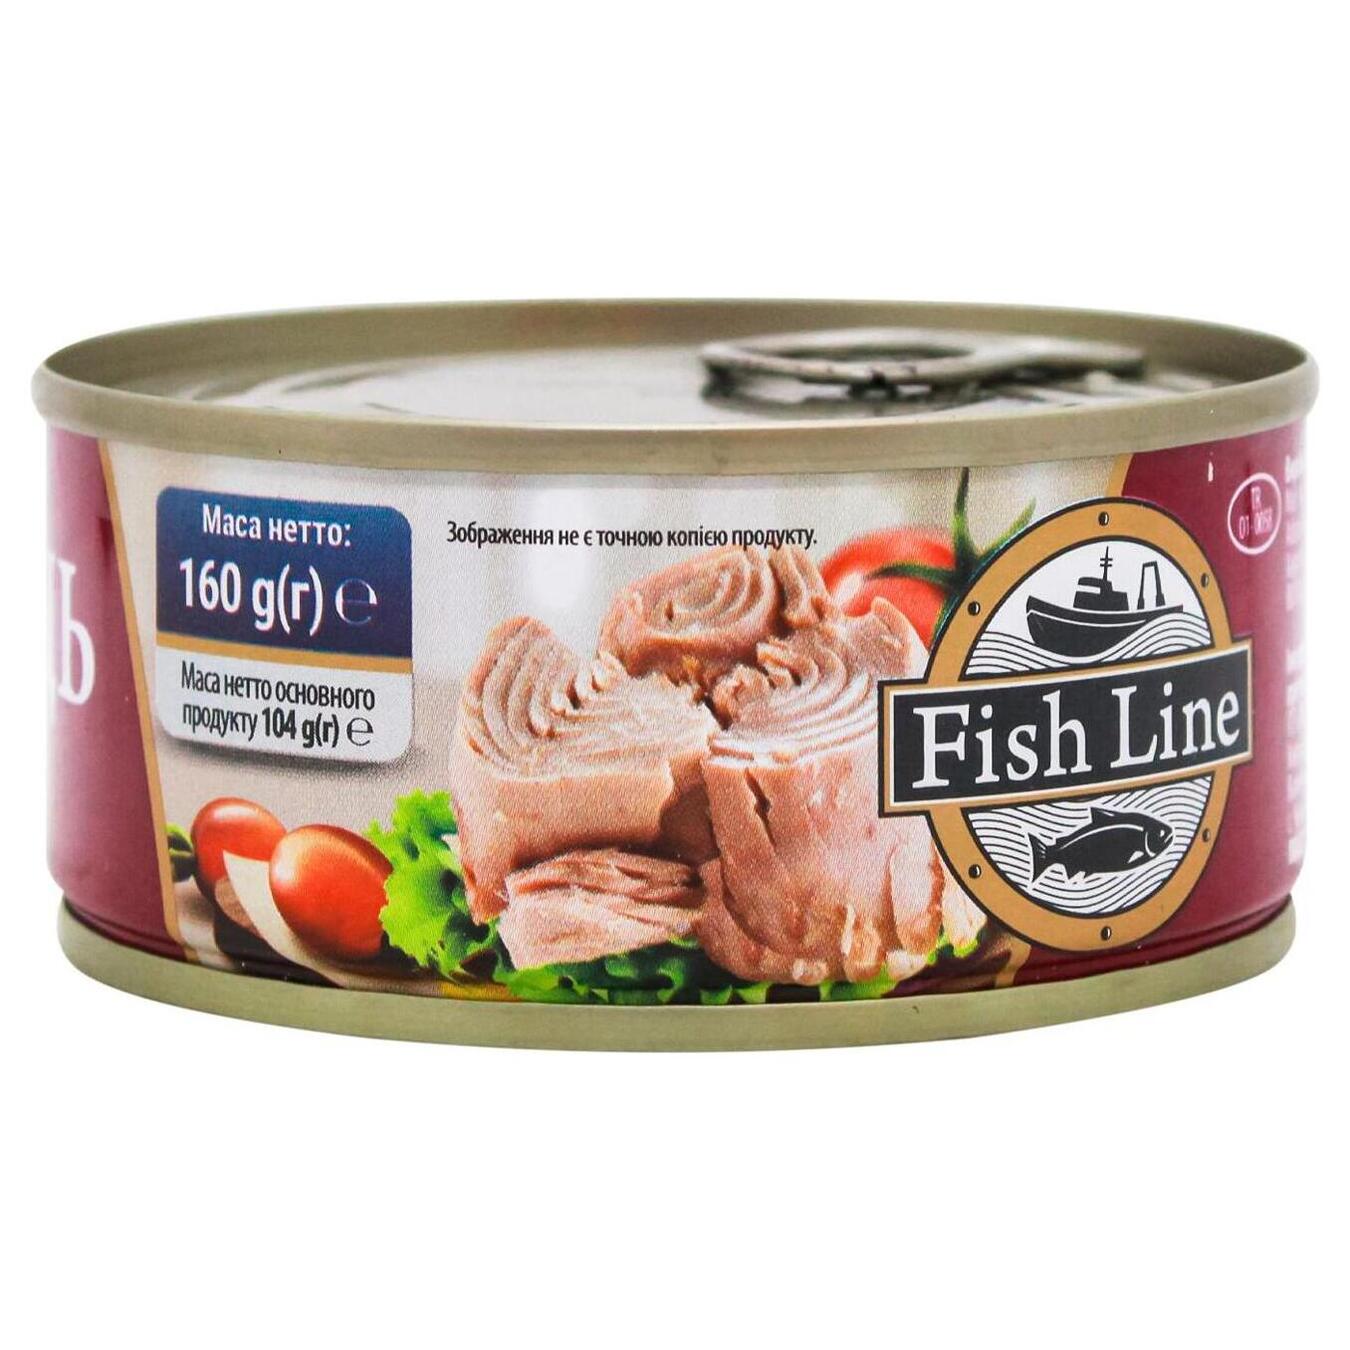 Fish Line tuna in oil 160g